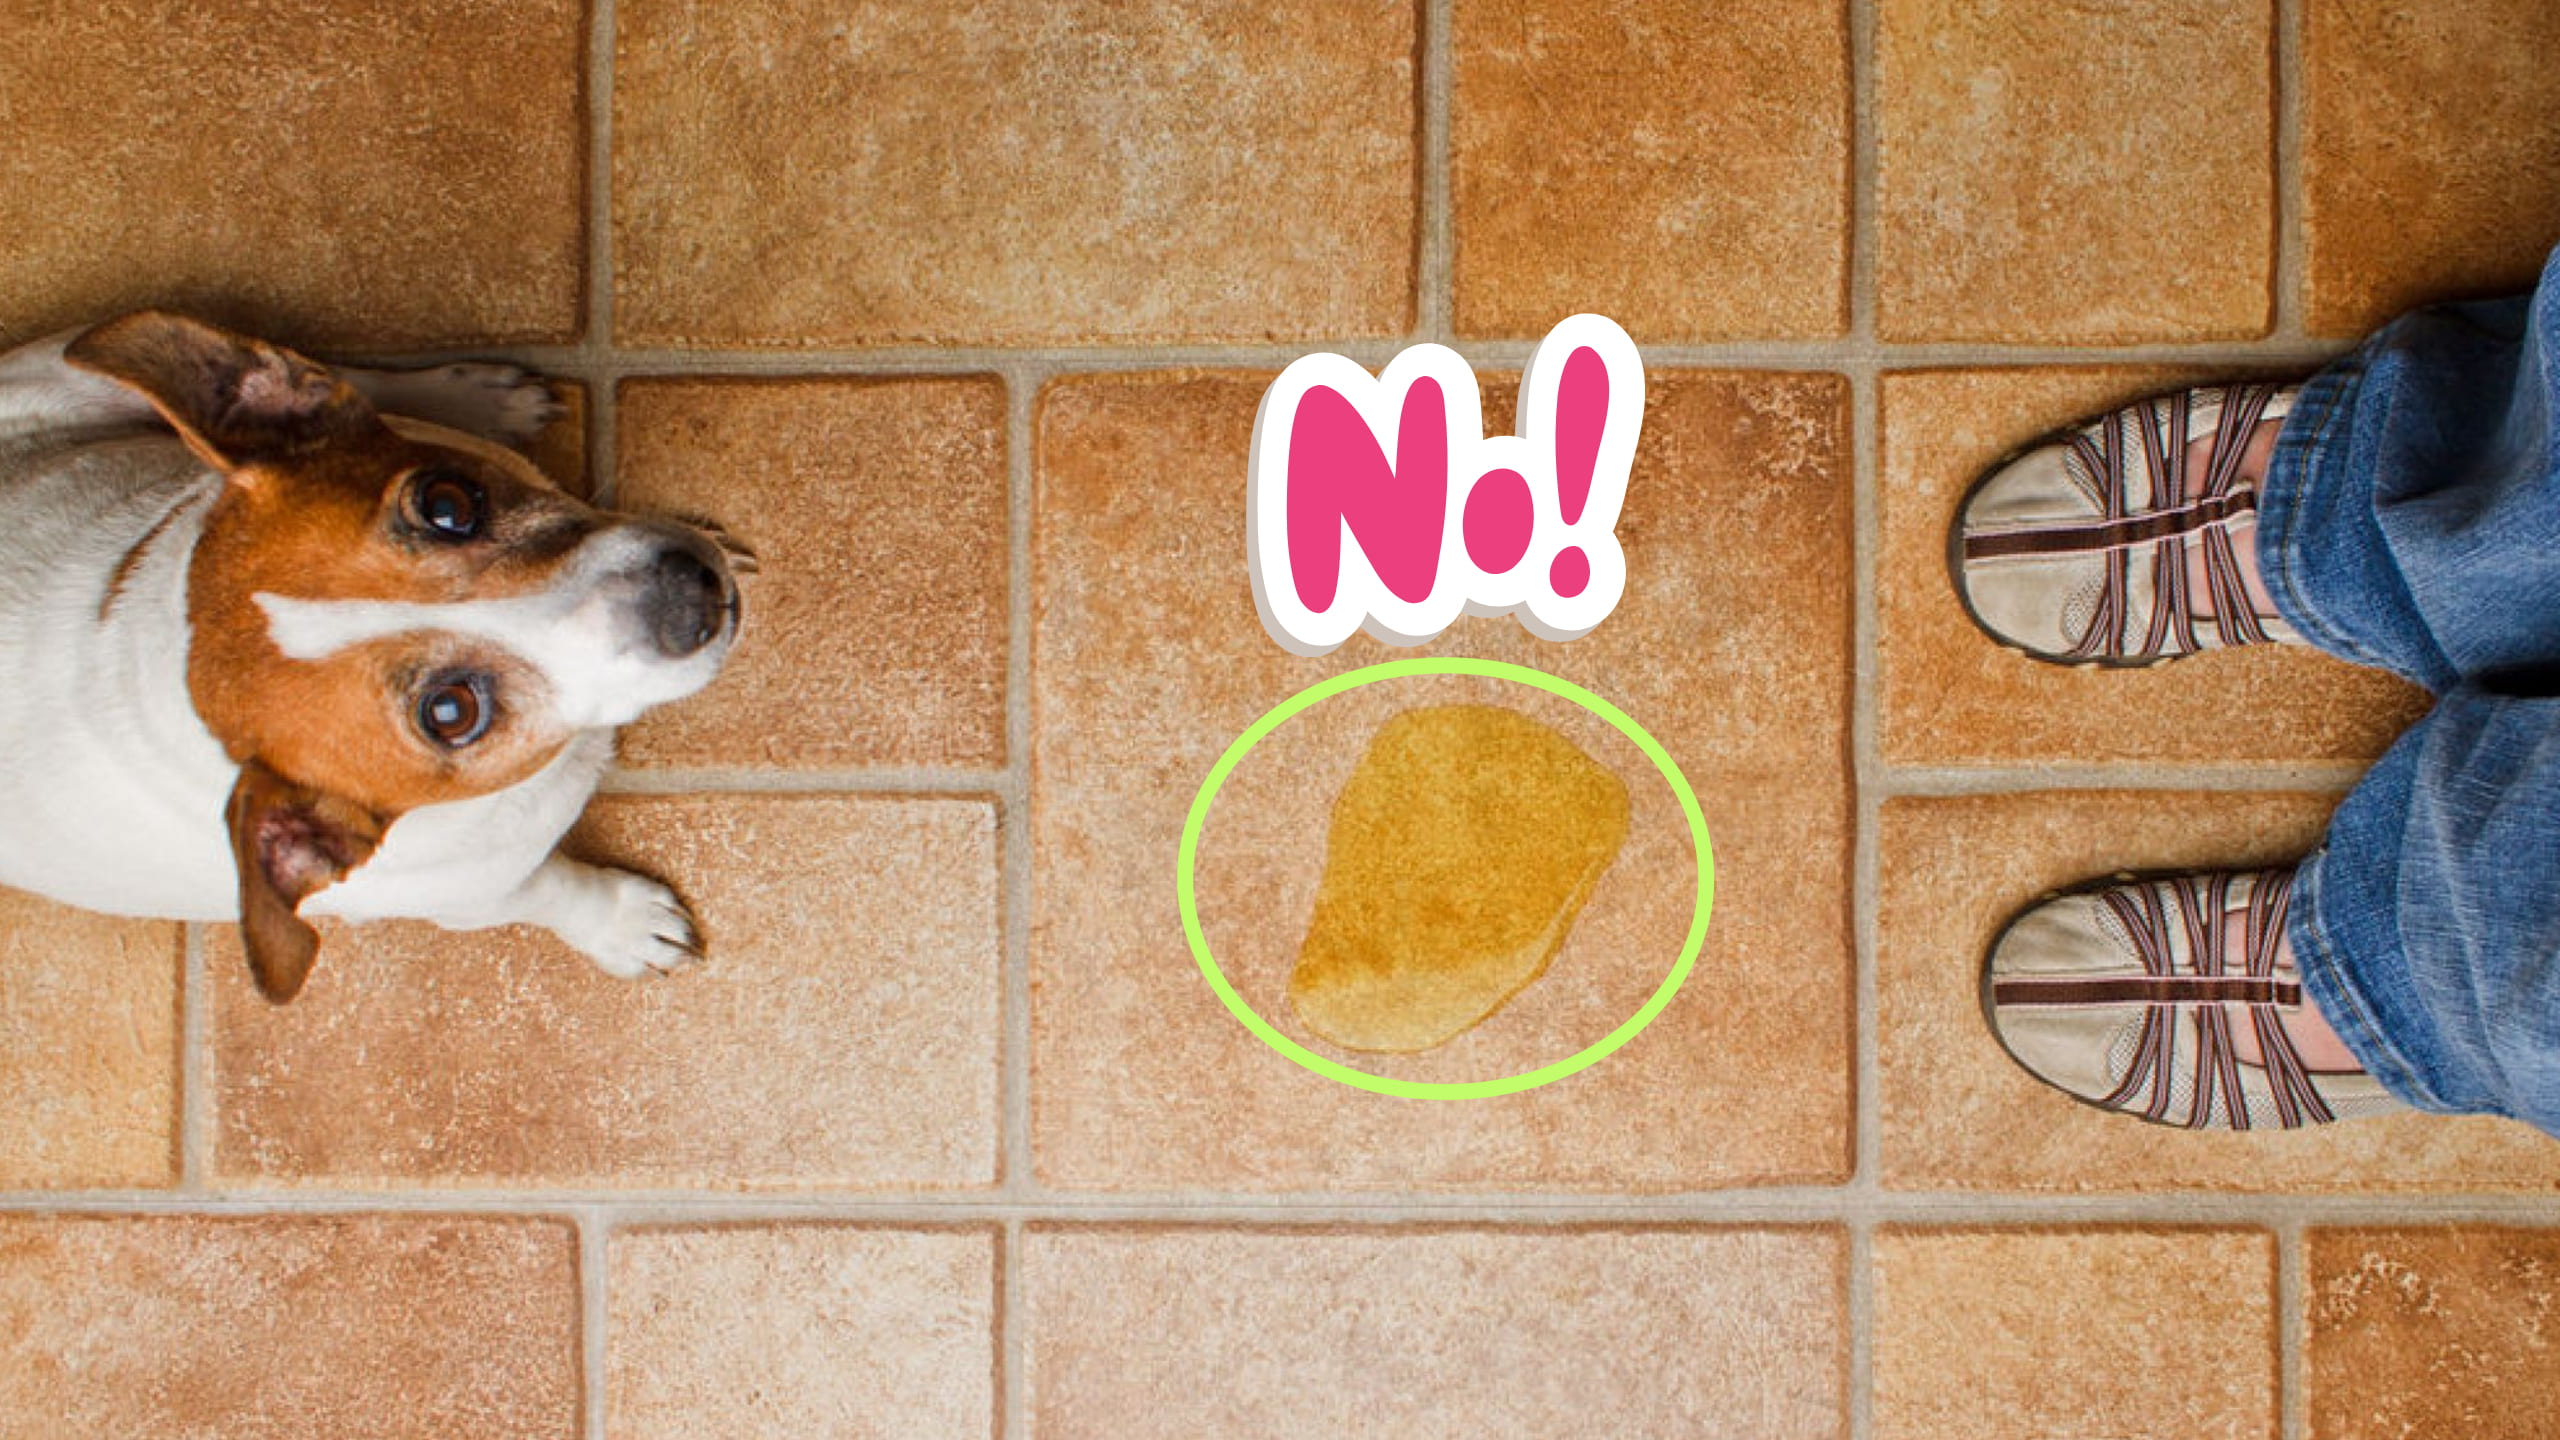 ¿Tu perro marca territorio en lugares inapropiados? Prueba estos 3 poderosos sprays caseros y dile adiós a ese problema de una vez por todas